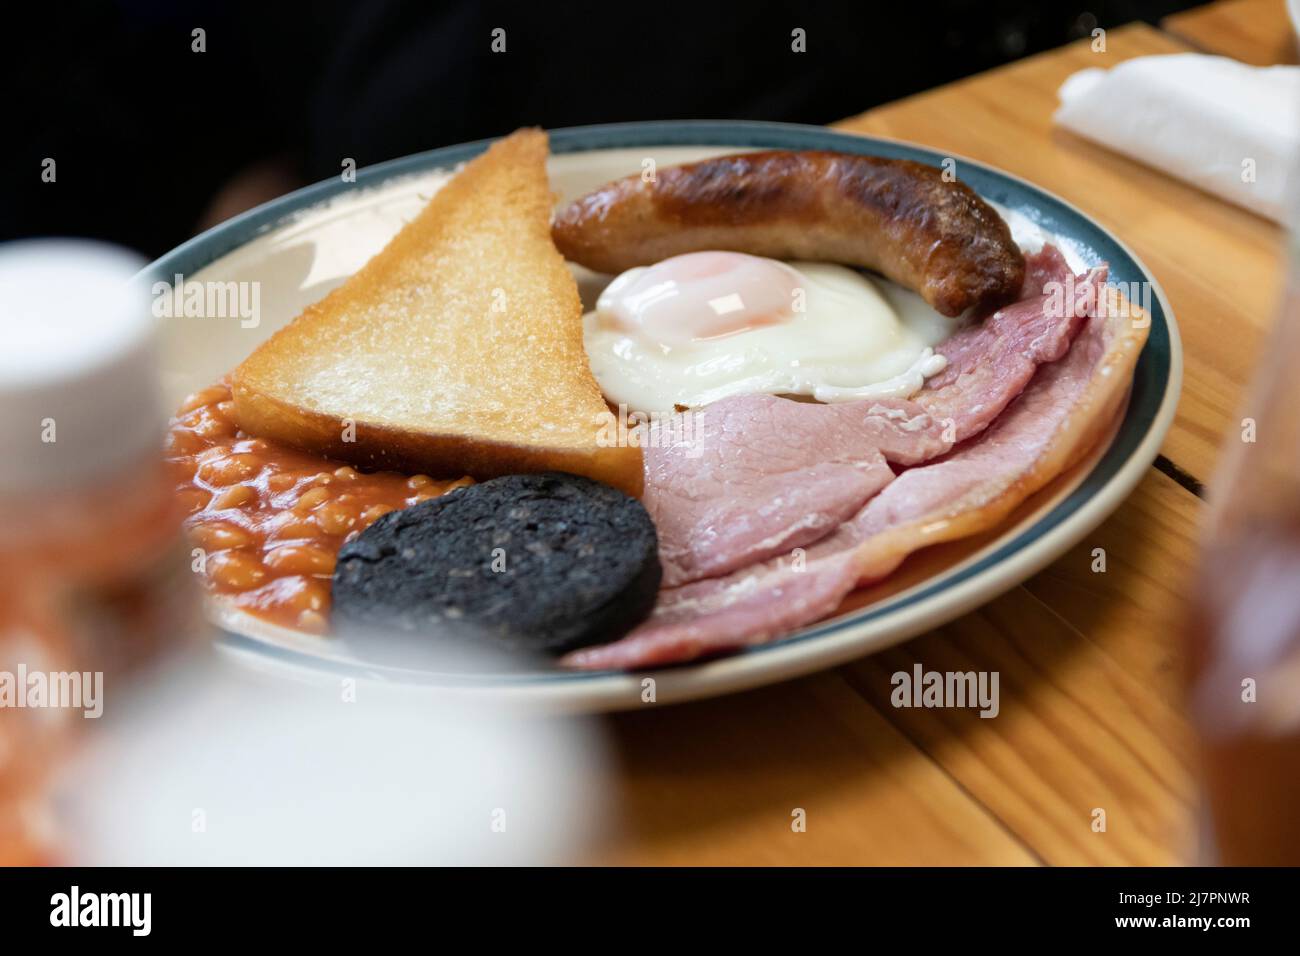 Komplettes englisches Frühstück - auch bekannt als „Fry-up“ - bestehend aus Eiern, Wurst, Speck, Bohnen, Toast, Und Blutwurst. Stockfoto